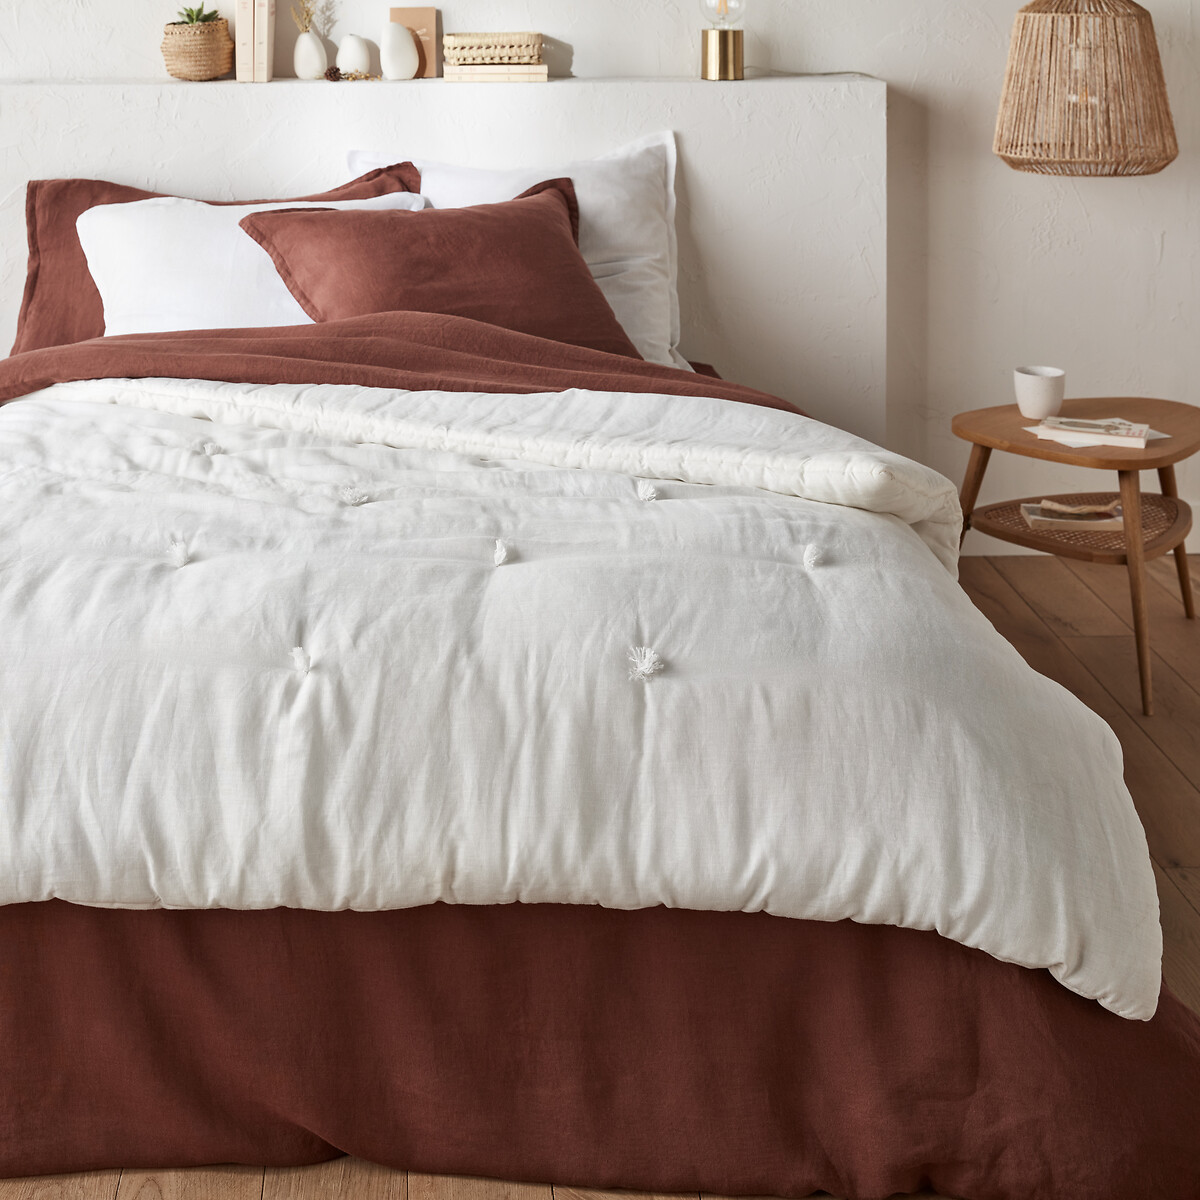 Σπίτι > Λευκά είδη > Ύφασμα, διακόσμηση Κάλυμμα κρεβατιού από προπλυμένο λινό 90x190 cm